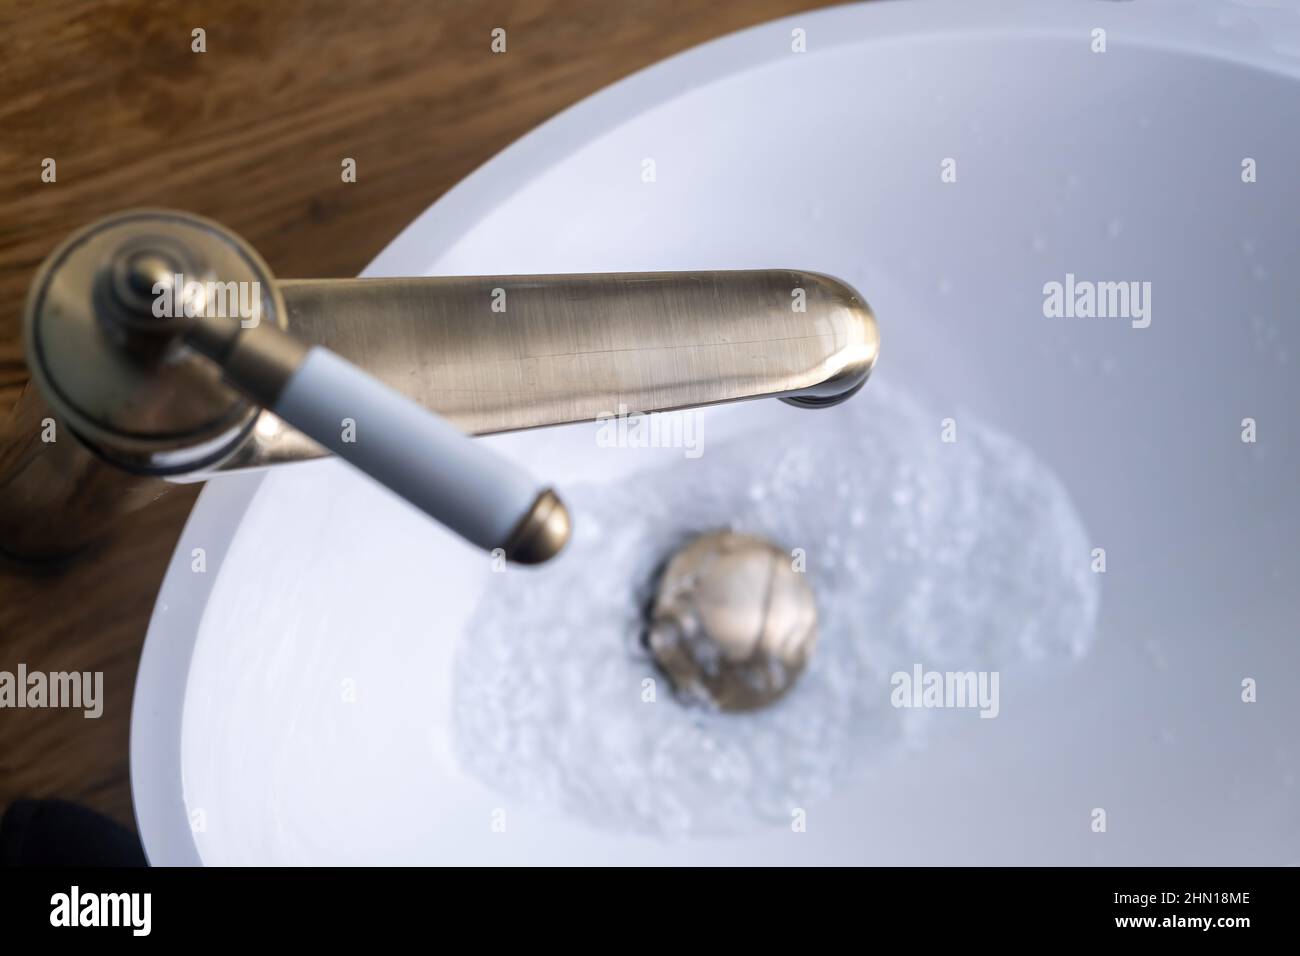 Lavabo lavabo, dettaglio interno bagno. Aprire il rubinetto in bronzo con acqua corrente sul lavabo bianco, vista dall'alto Foto Stock